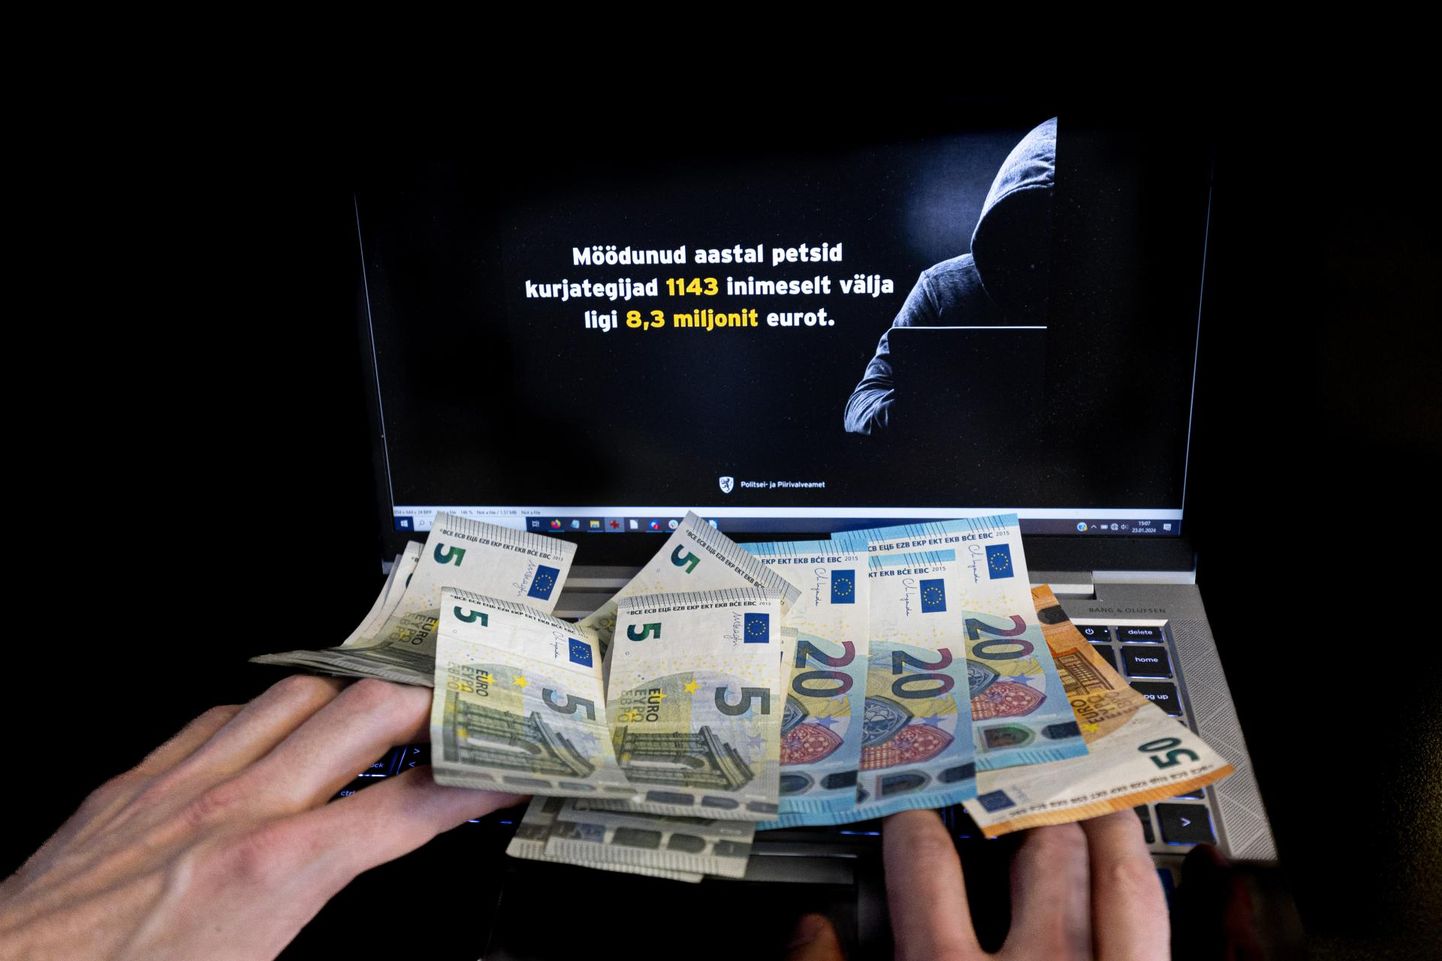 Möödunud aastal petsid kelmid Eesti inimestelt välja 8,3 miljonit eurot, millest ligikaudu viis miljonit kaotati investeerimispettuste ohvriks sattudes.